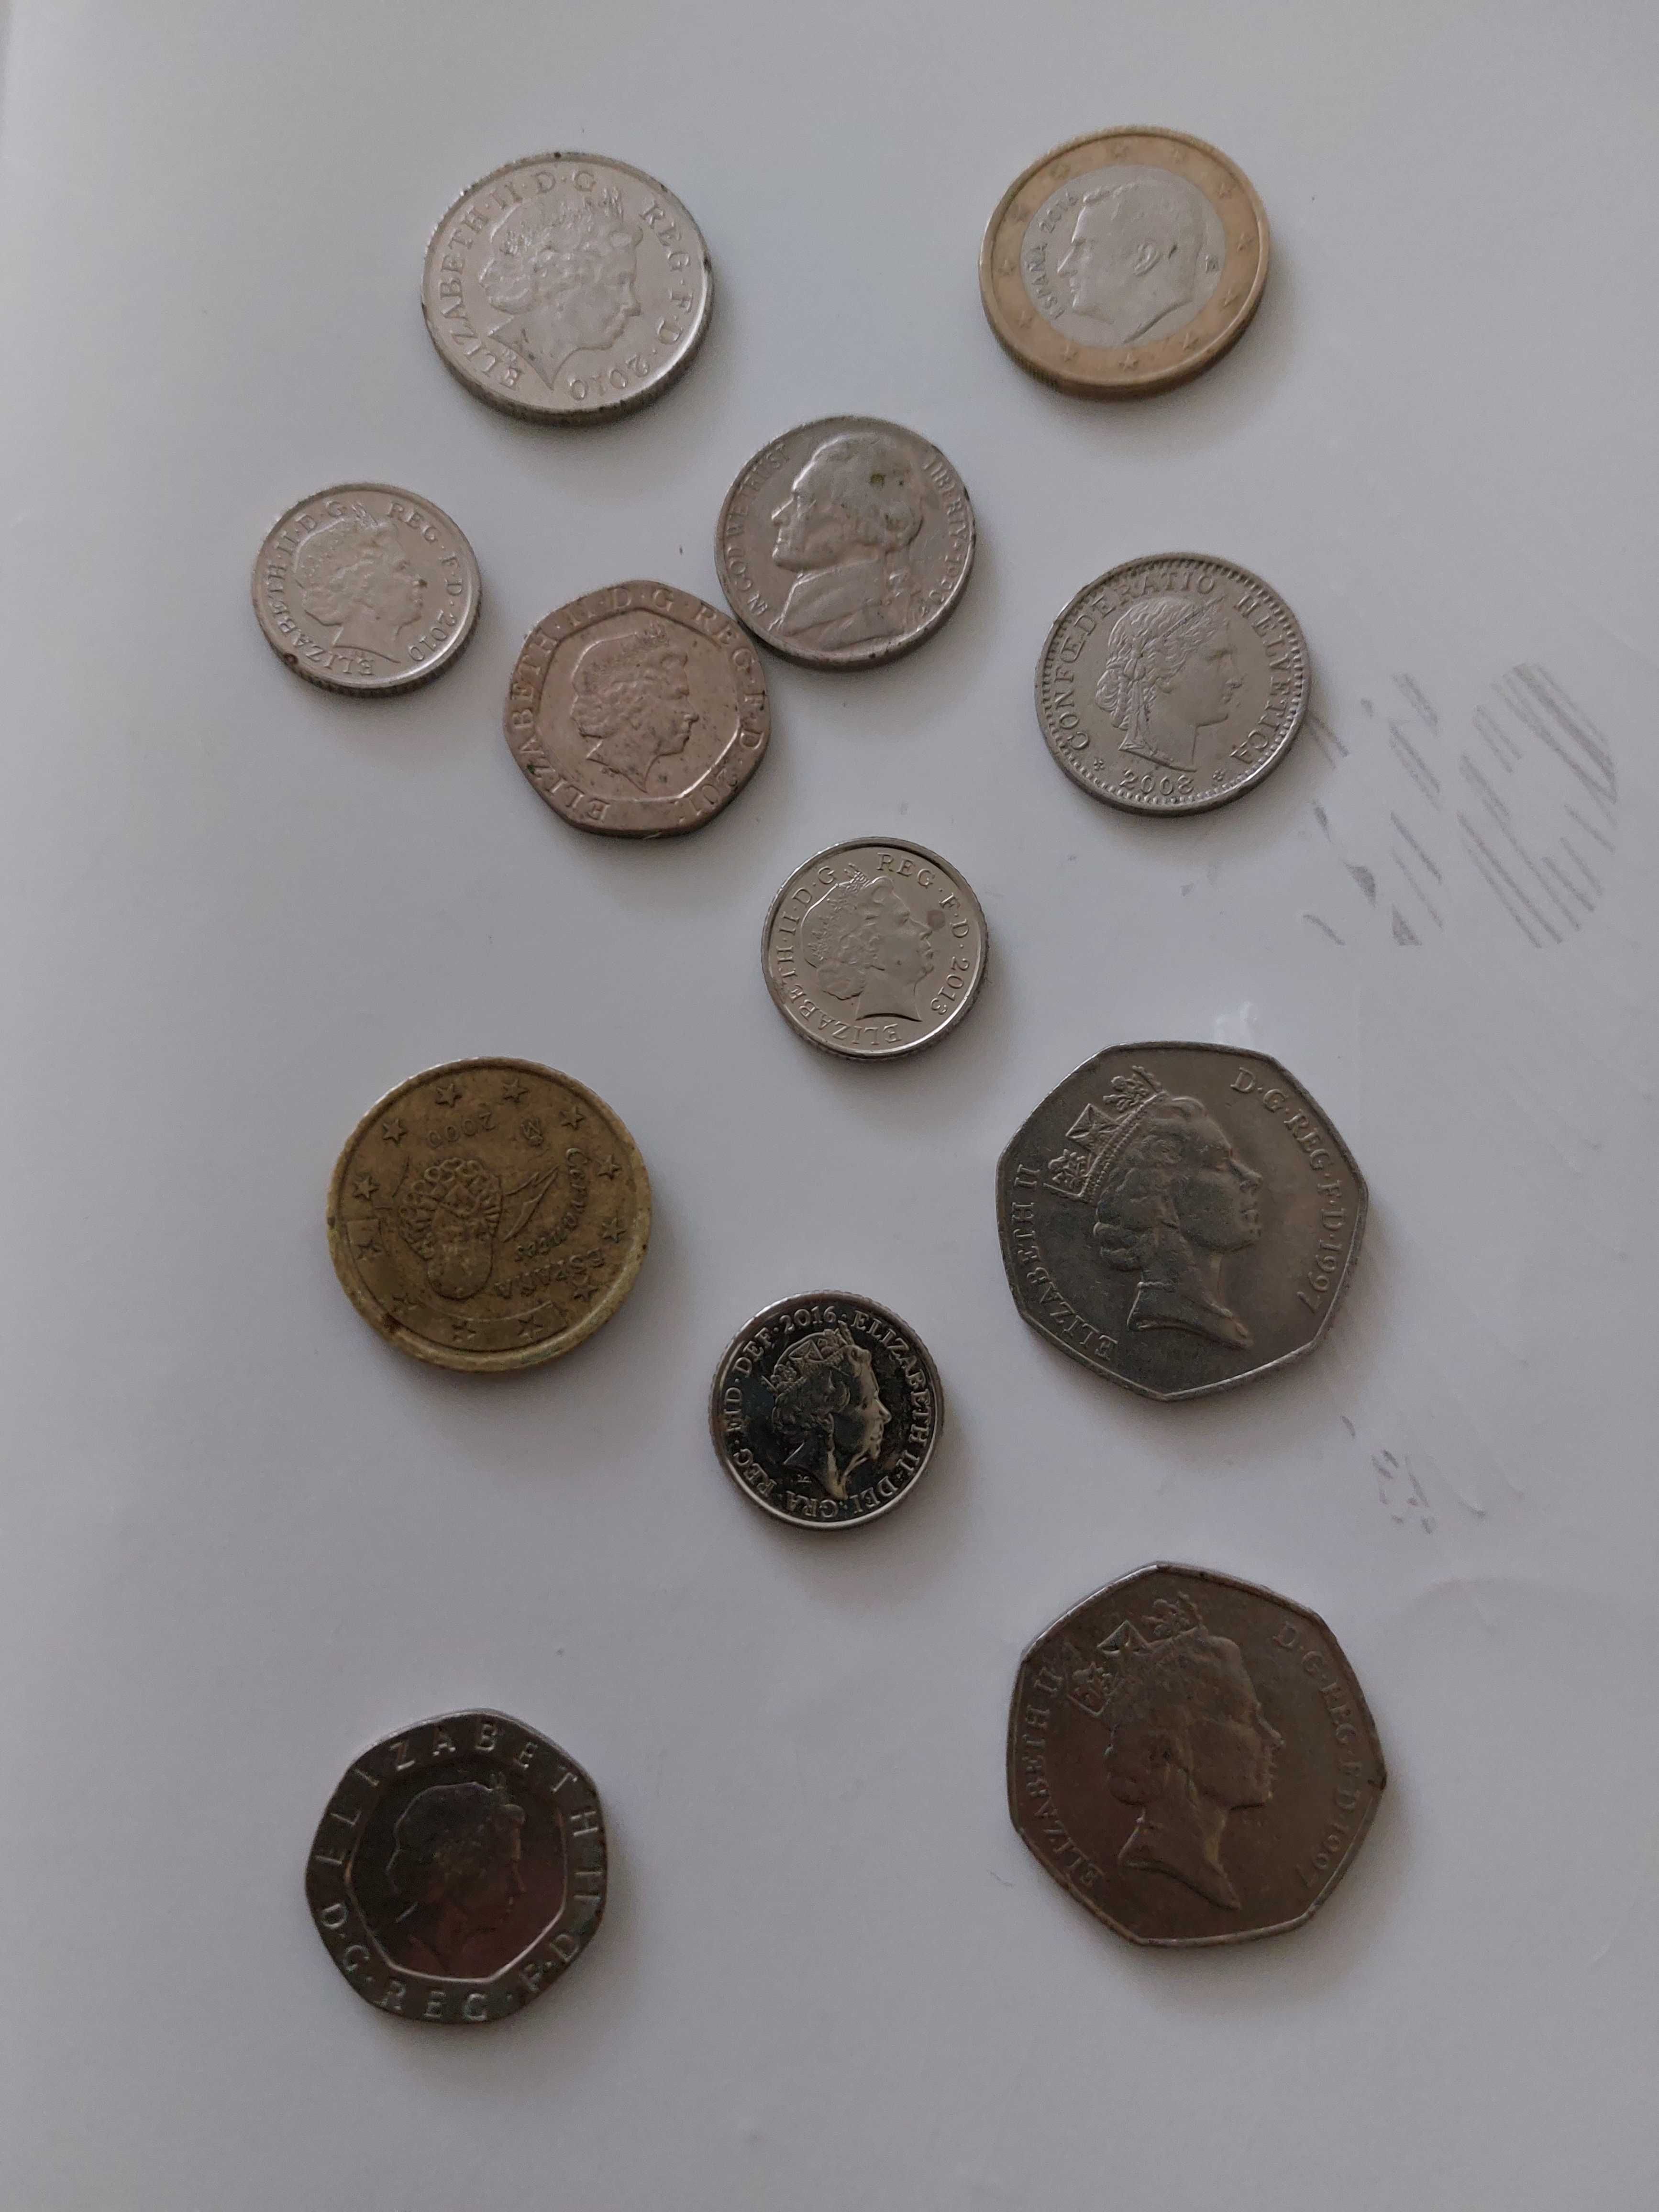 Vand monede si bacnote de colecție foarte vechi